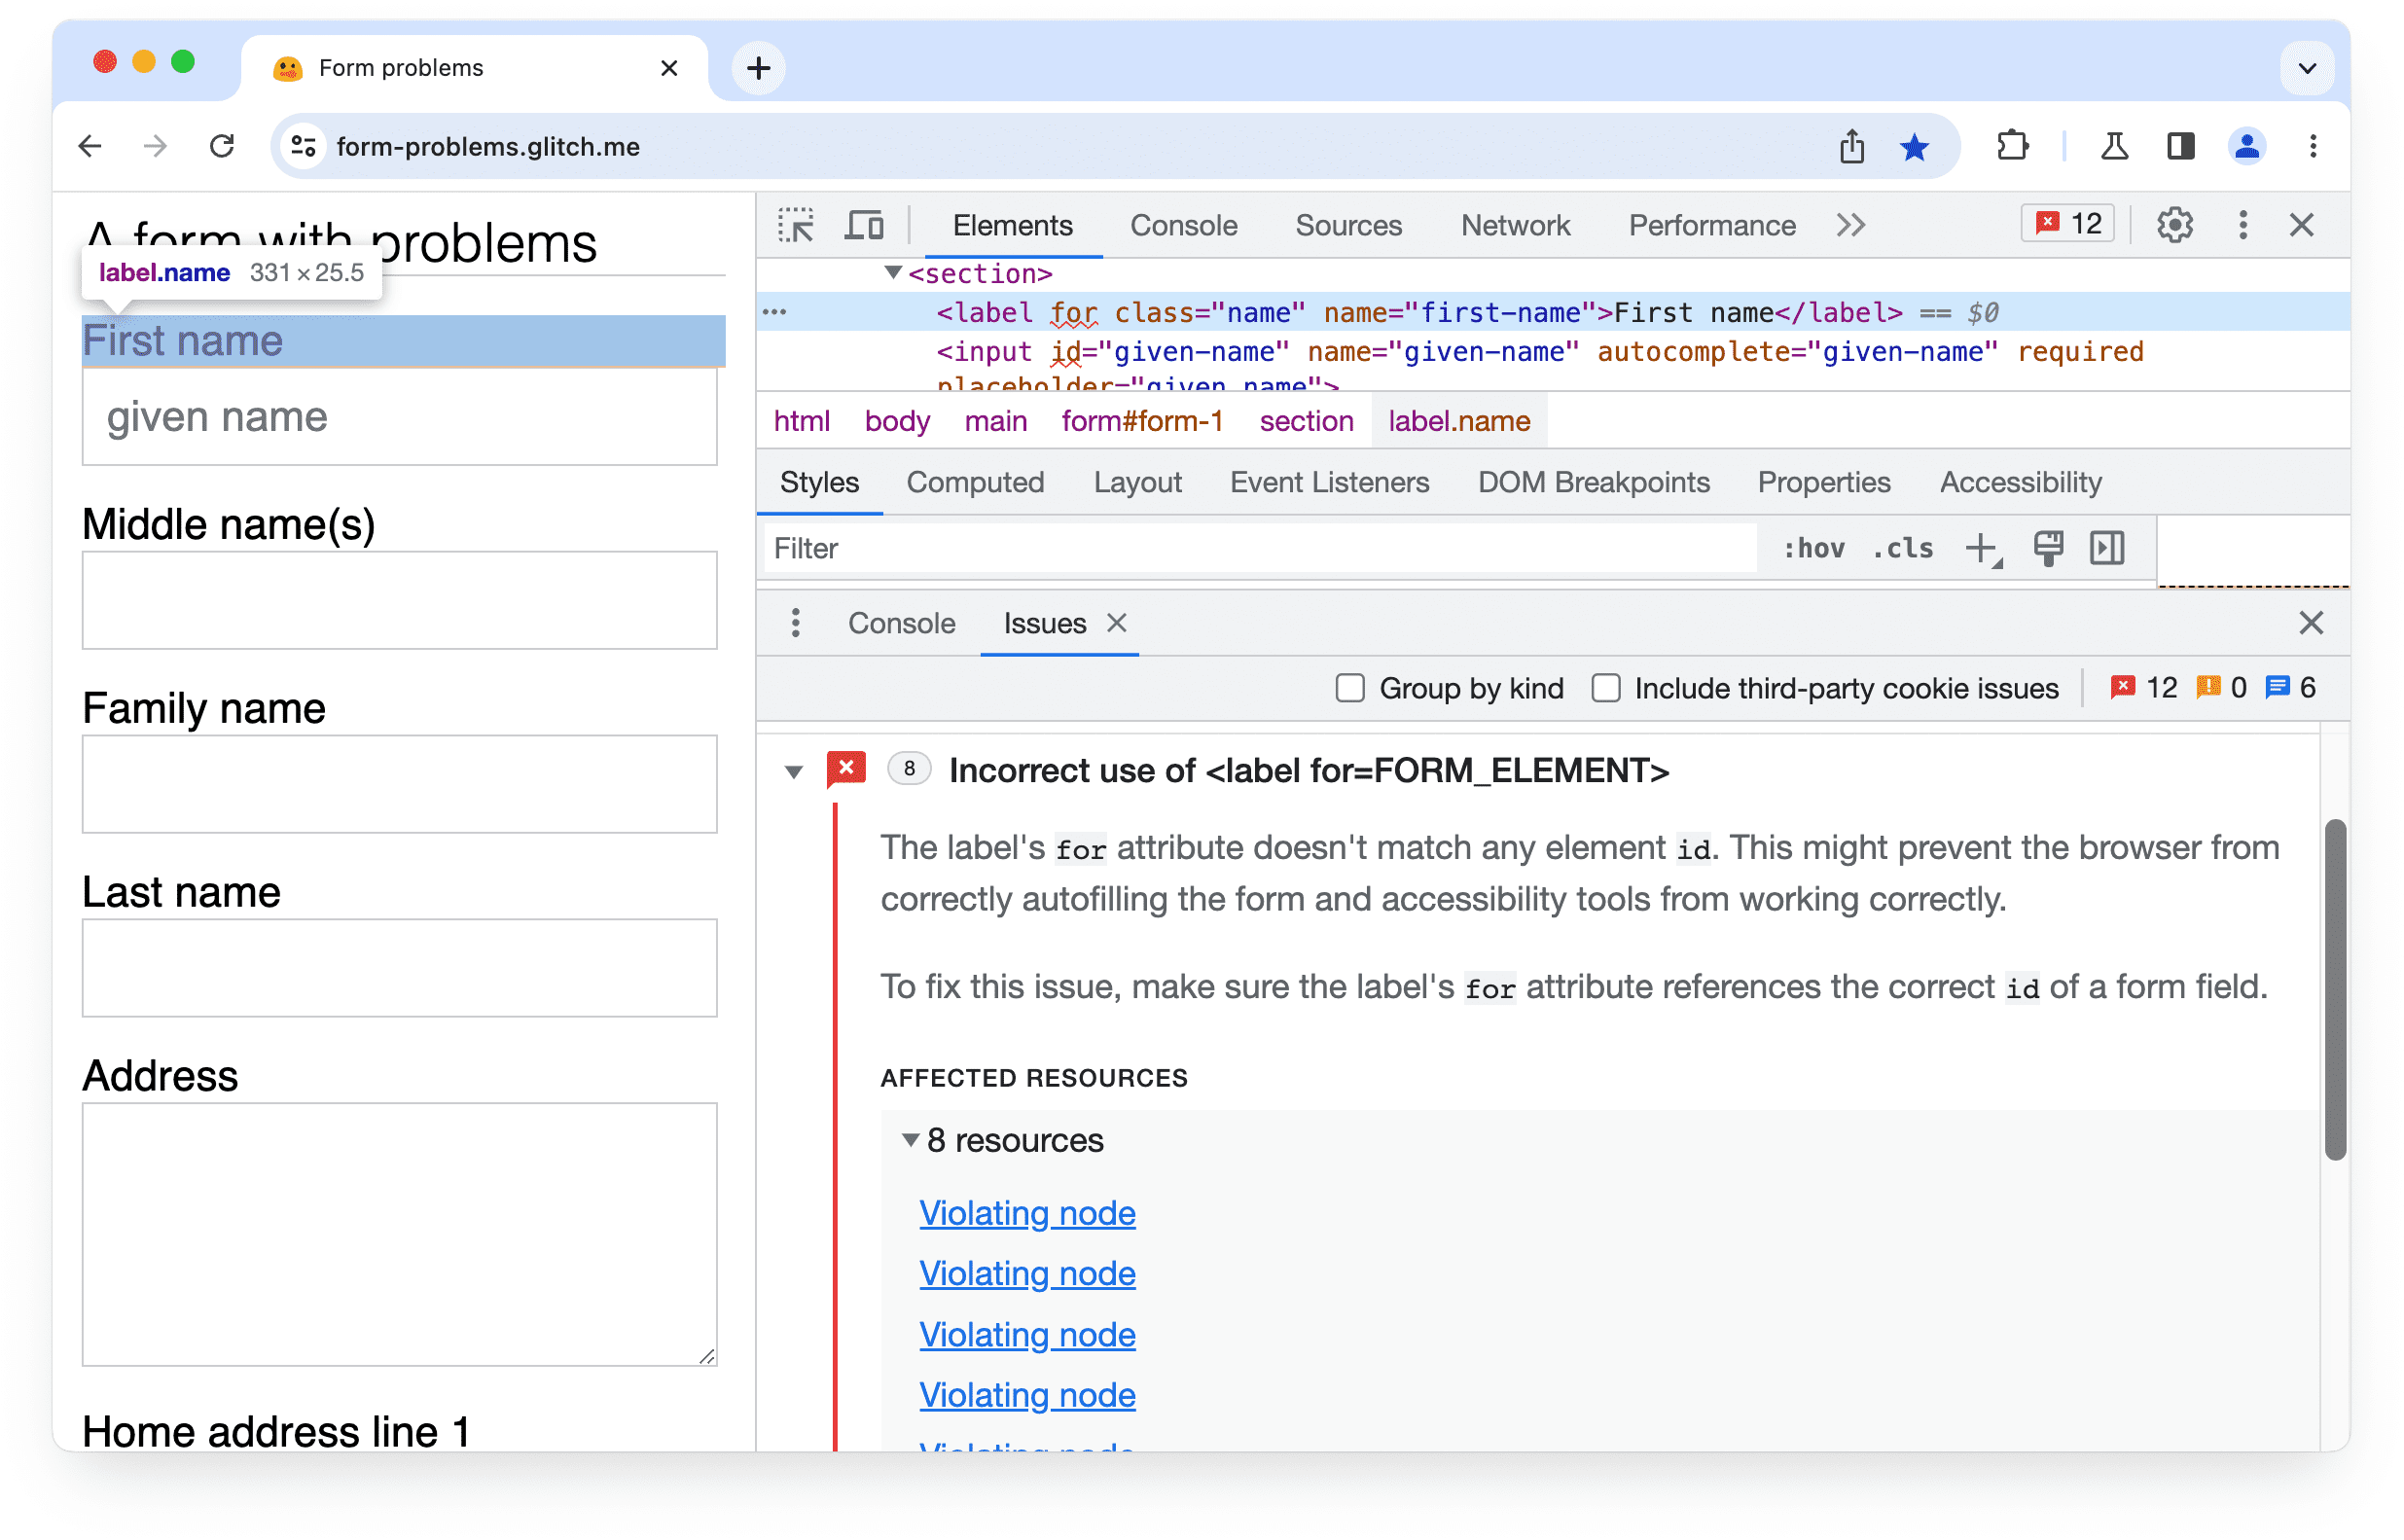 Problema expandido no
Chrome DevTools: uso incorreto do rótulo para o atributo.